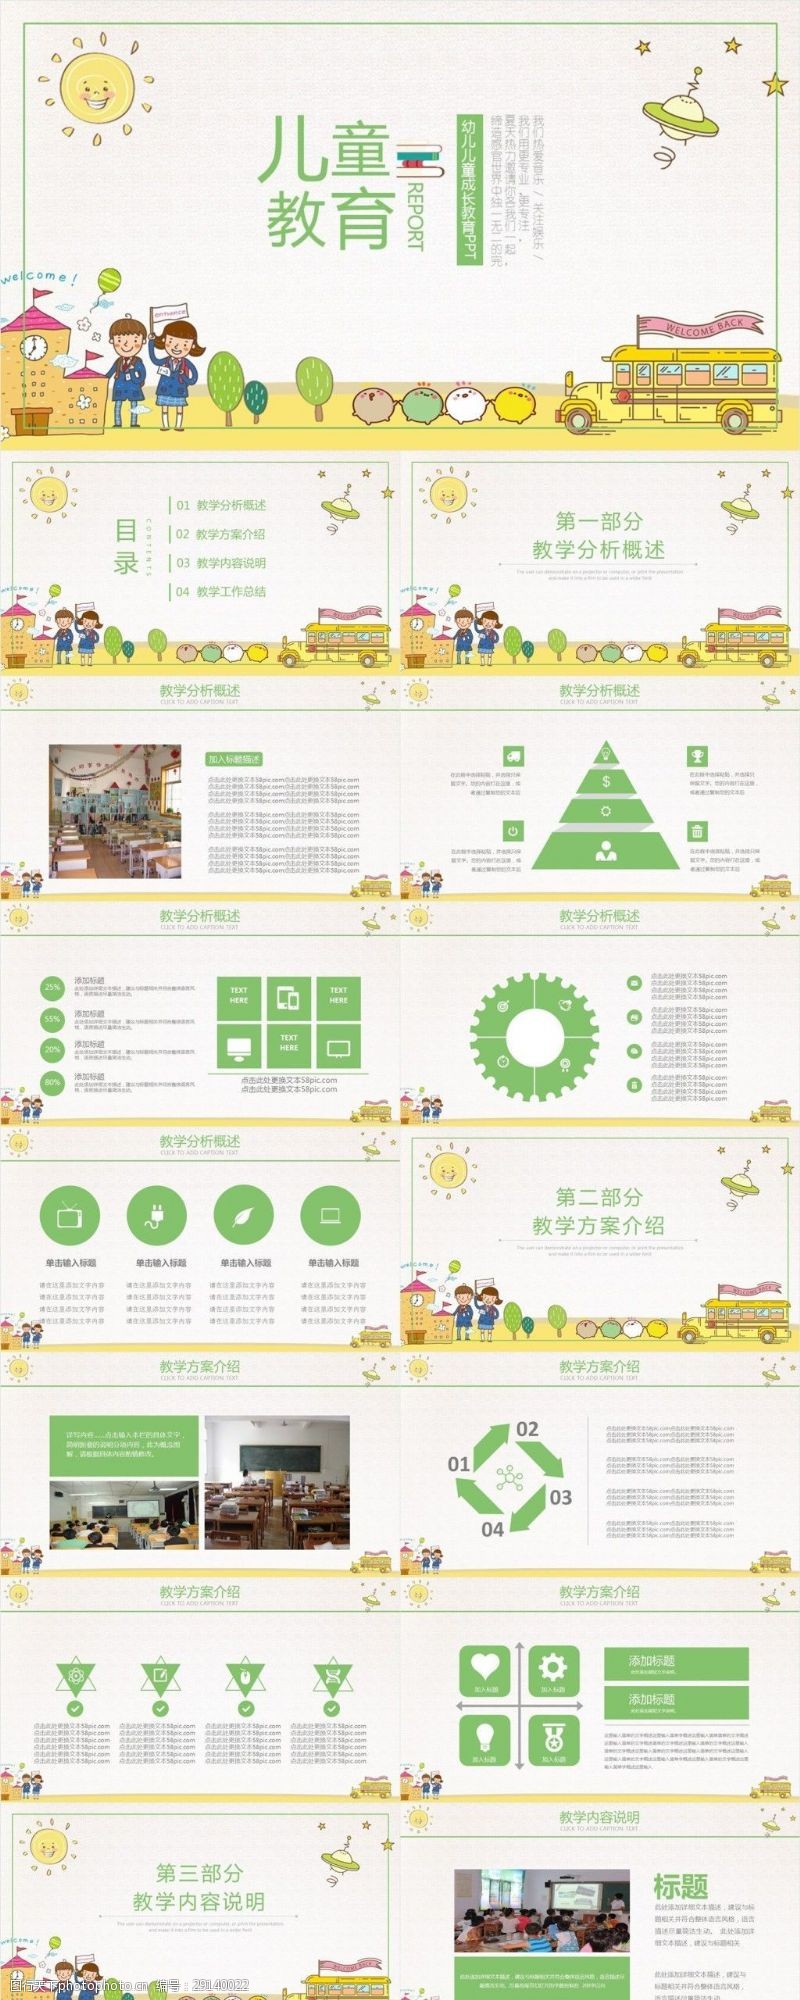 幼儿园模板下载卡通通用儿童教育课件PPT下载